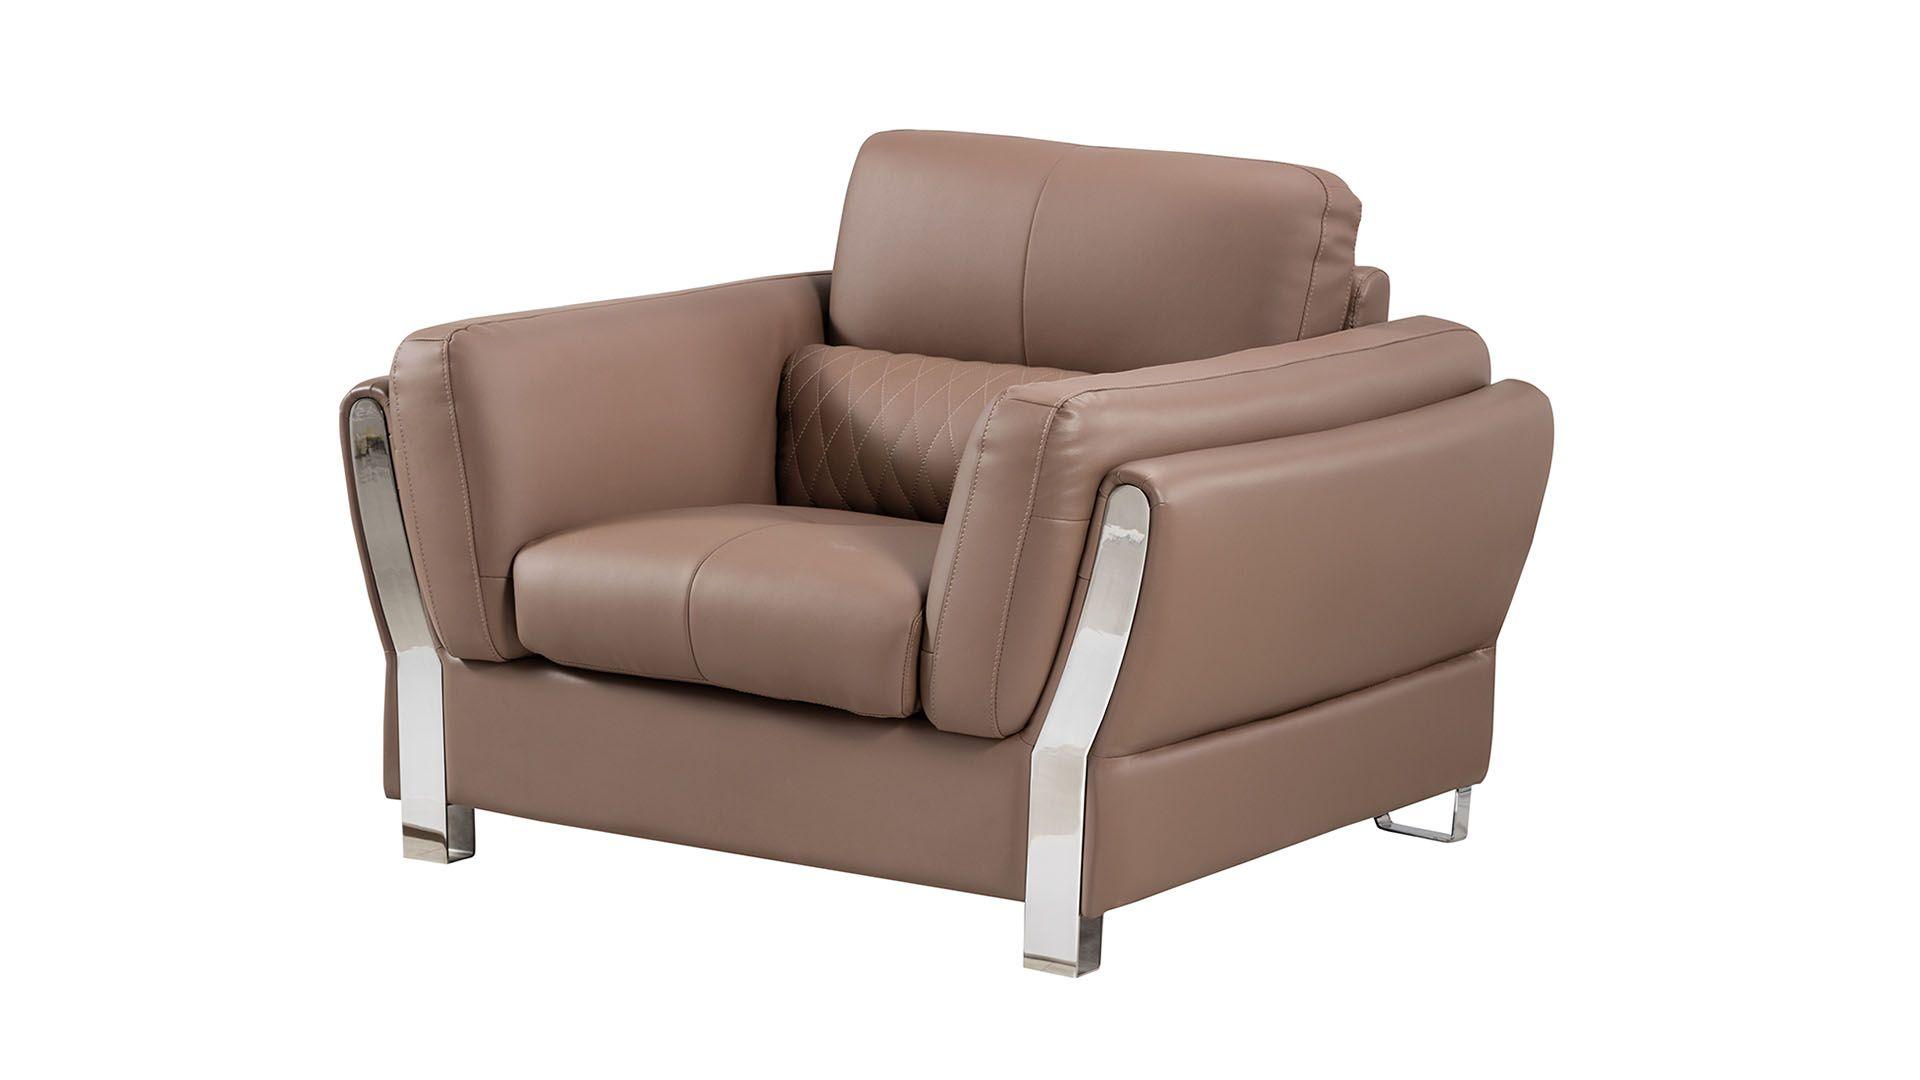 

    
AE690-TPE Set-3 American Eagle Furniture Sofa Set
